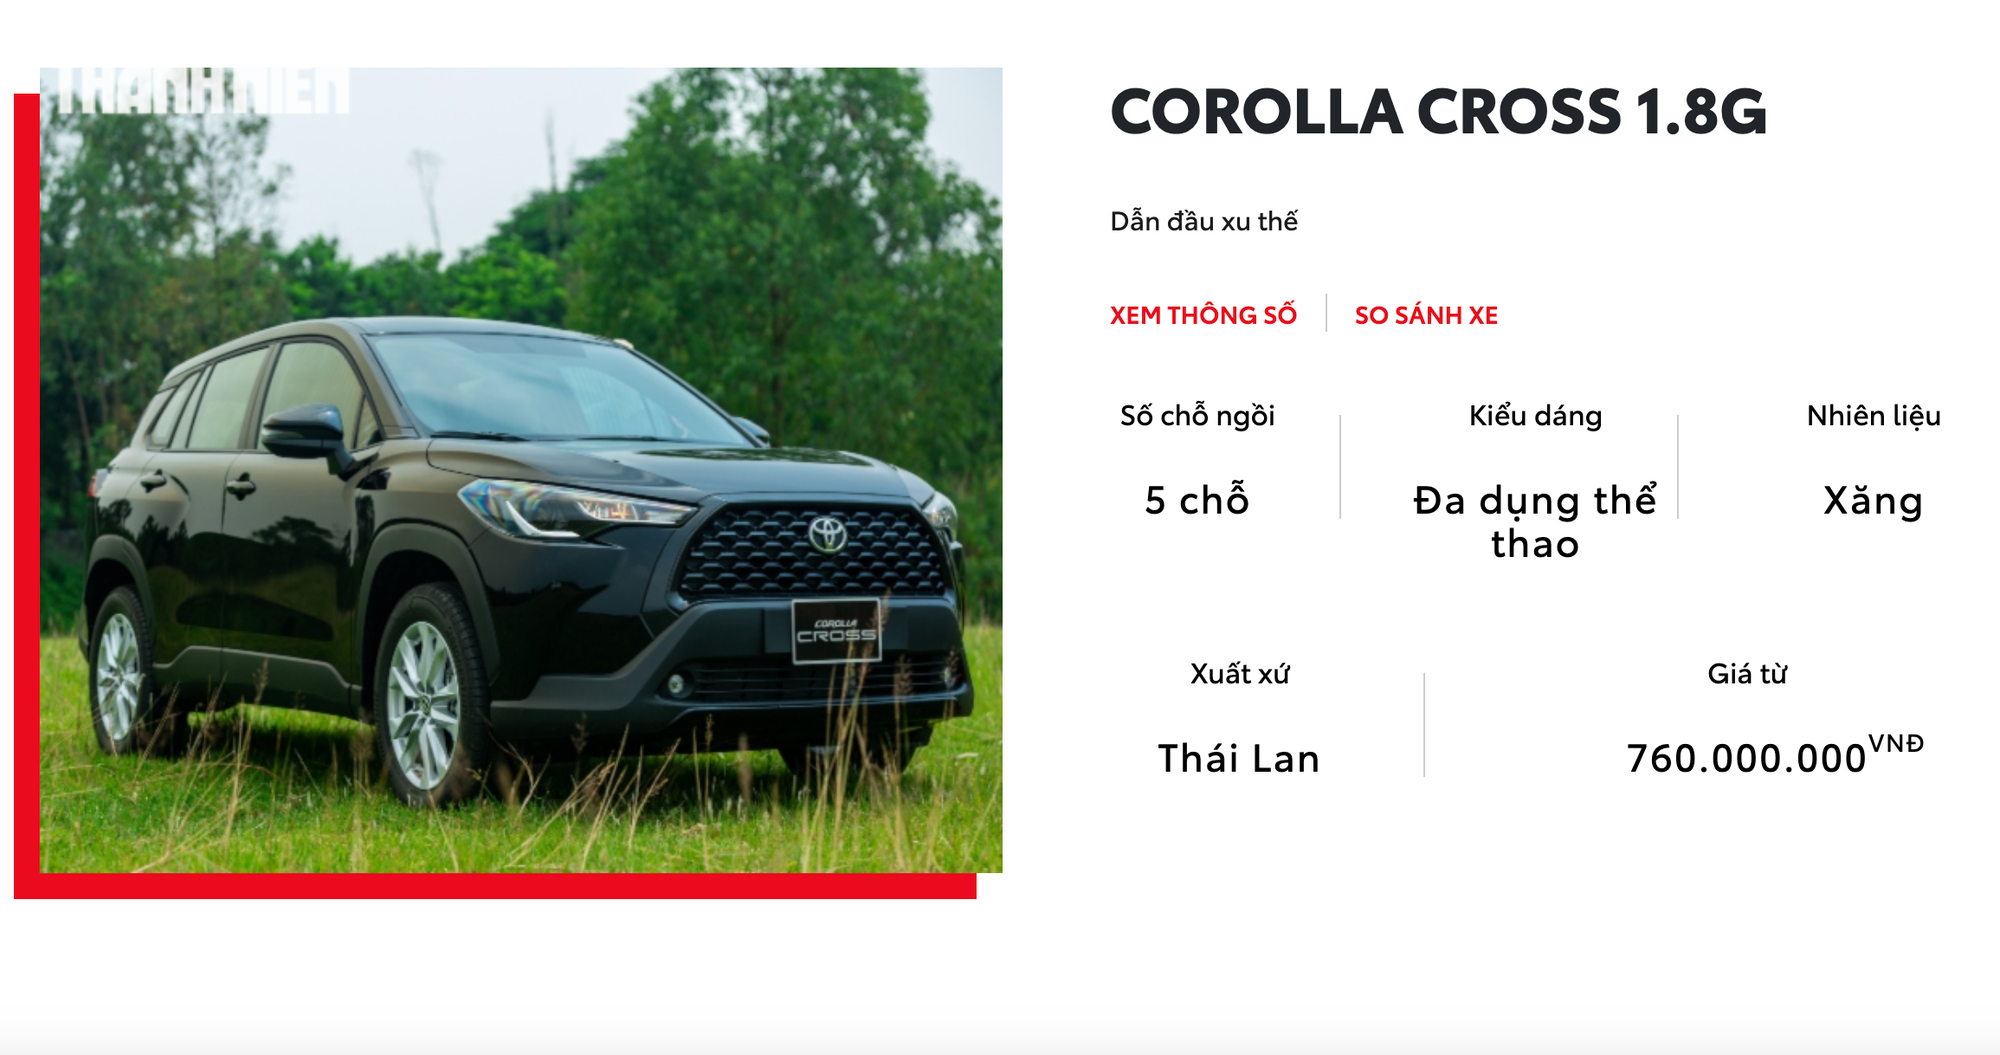 Sắp phân phối Yaris Cross, Toyota âm thầm tăng giá Corolla Cross - Ảnh 2.